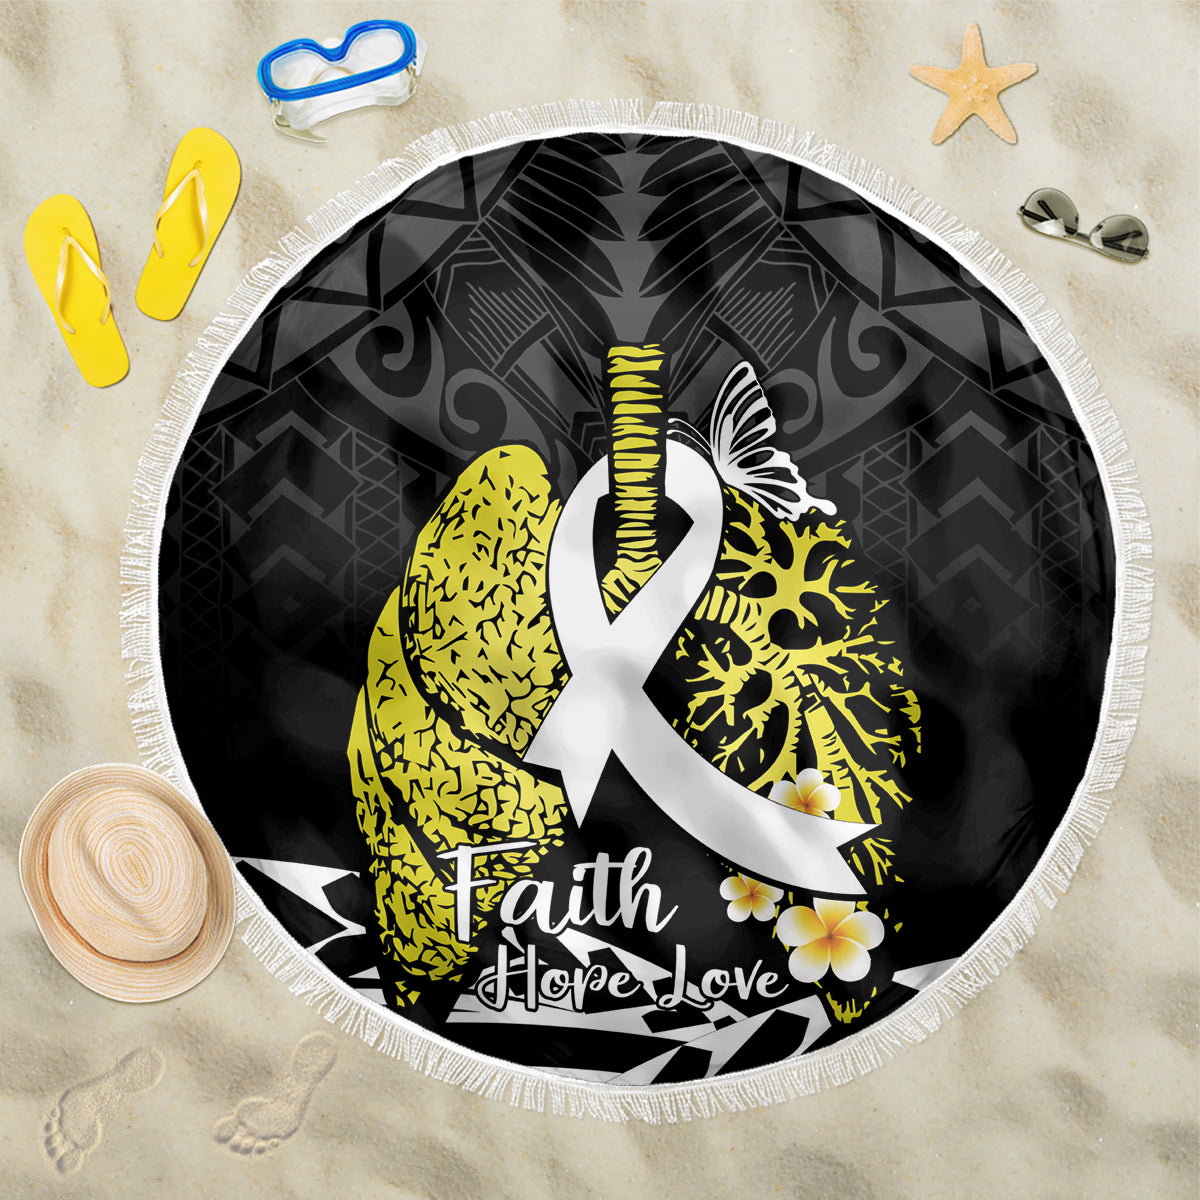 Polynesia World Lung Cancer Day Beach Blanket Faith Hope Love